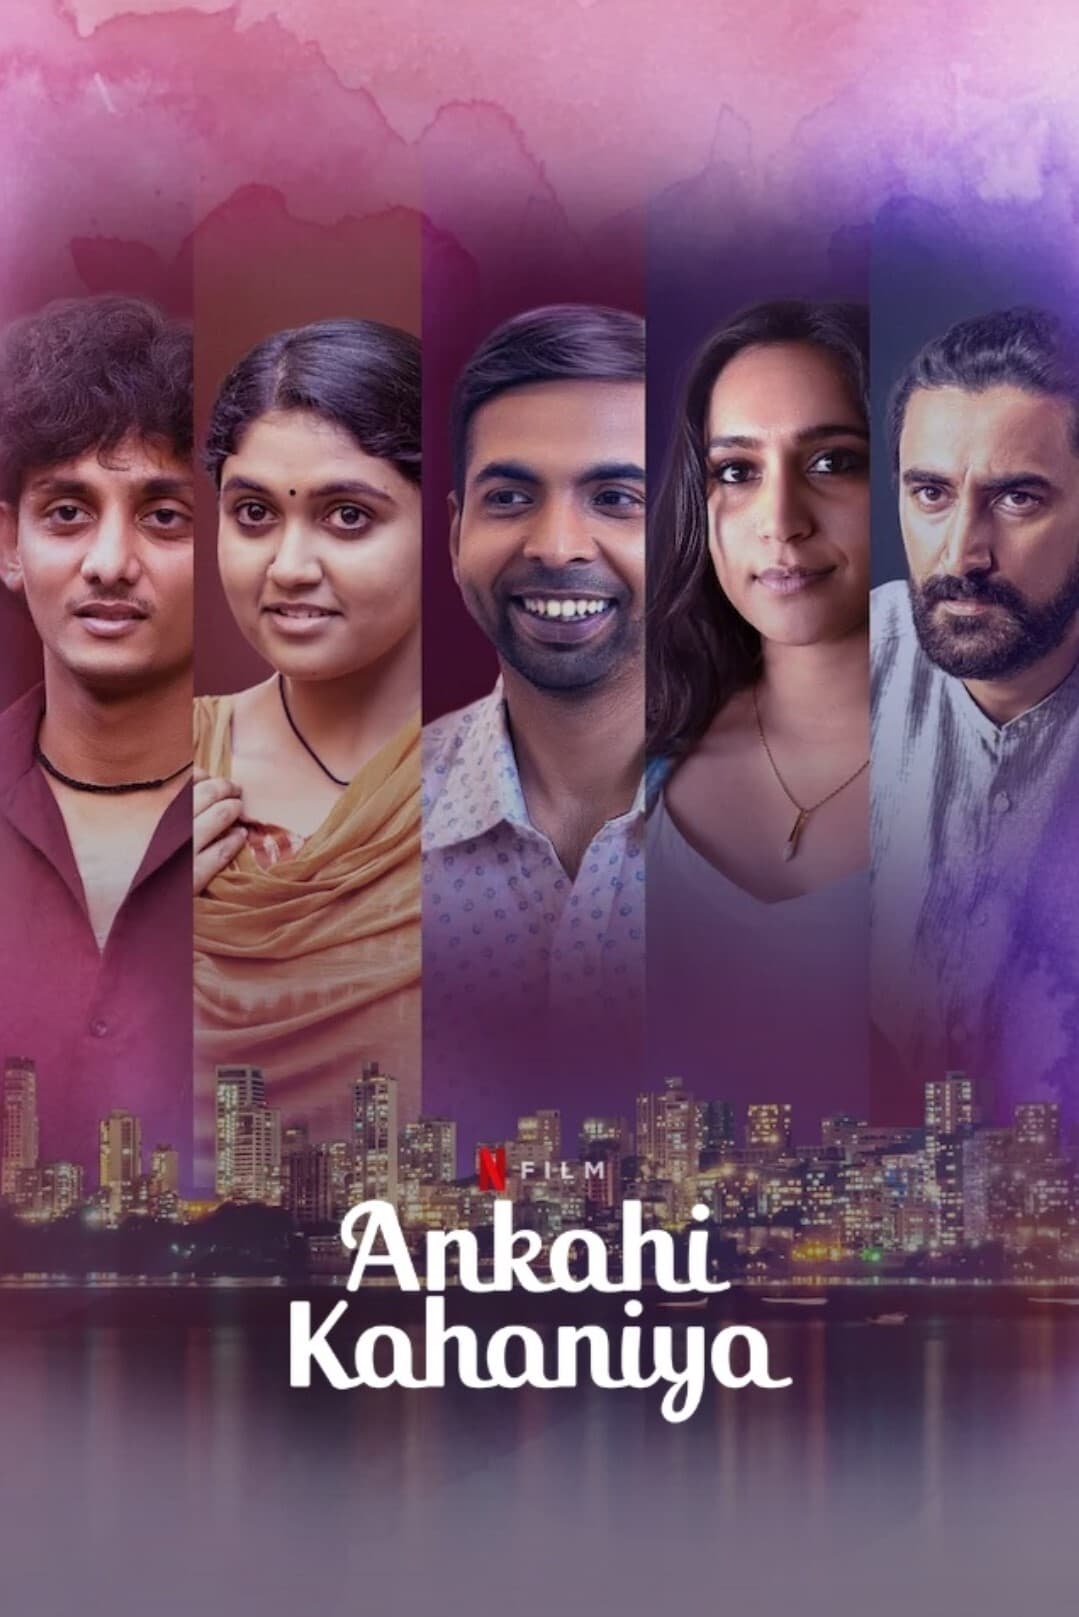 Poster for the movie "Ankahi Kahaniya"